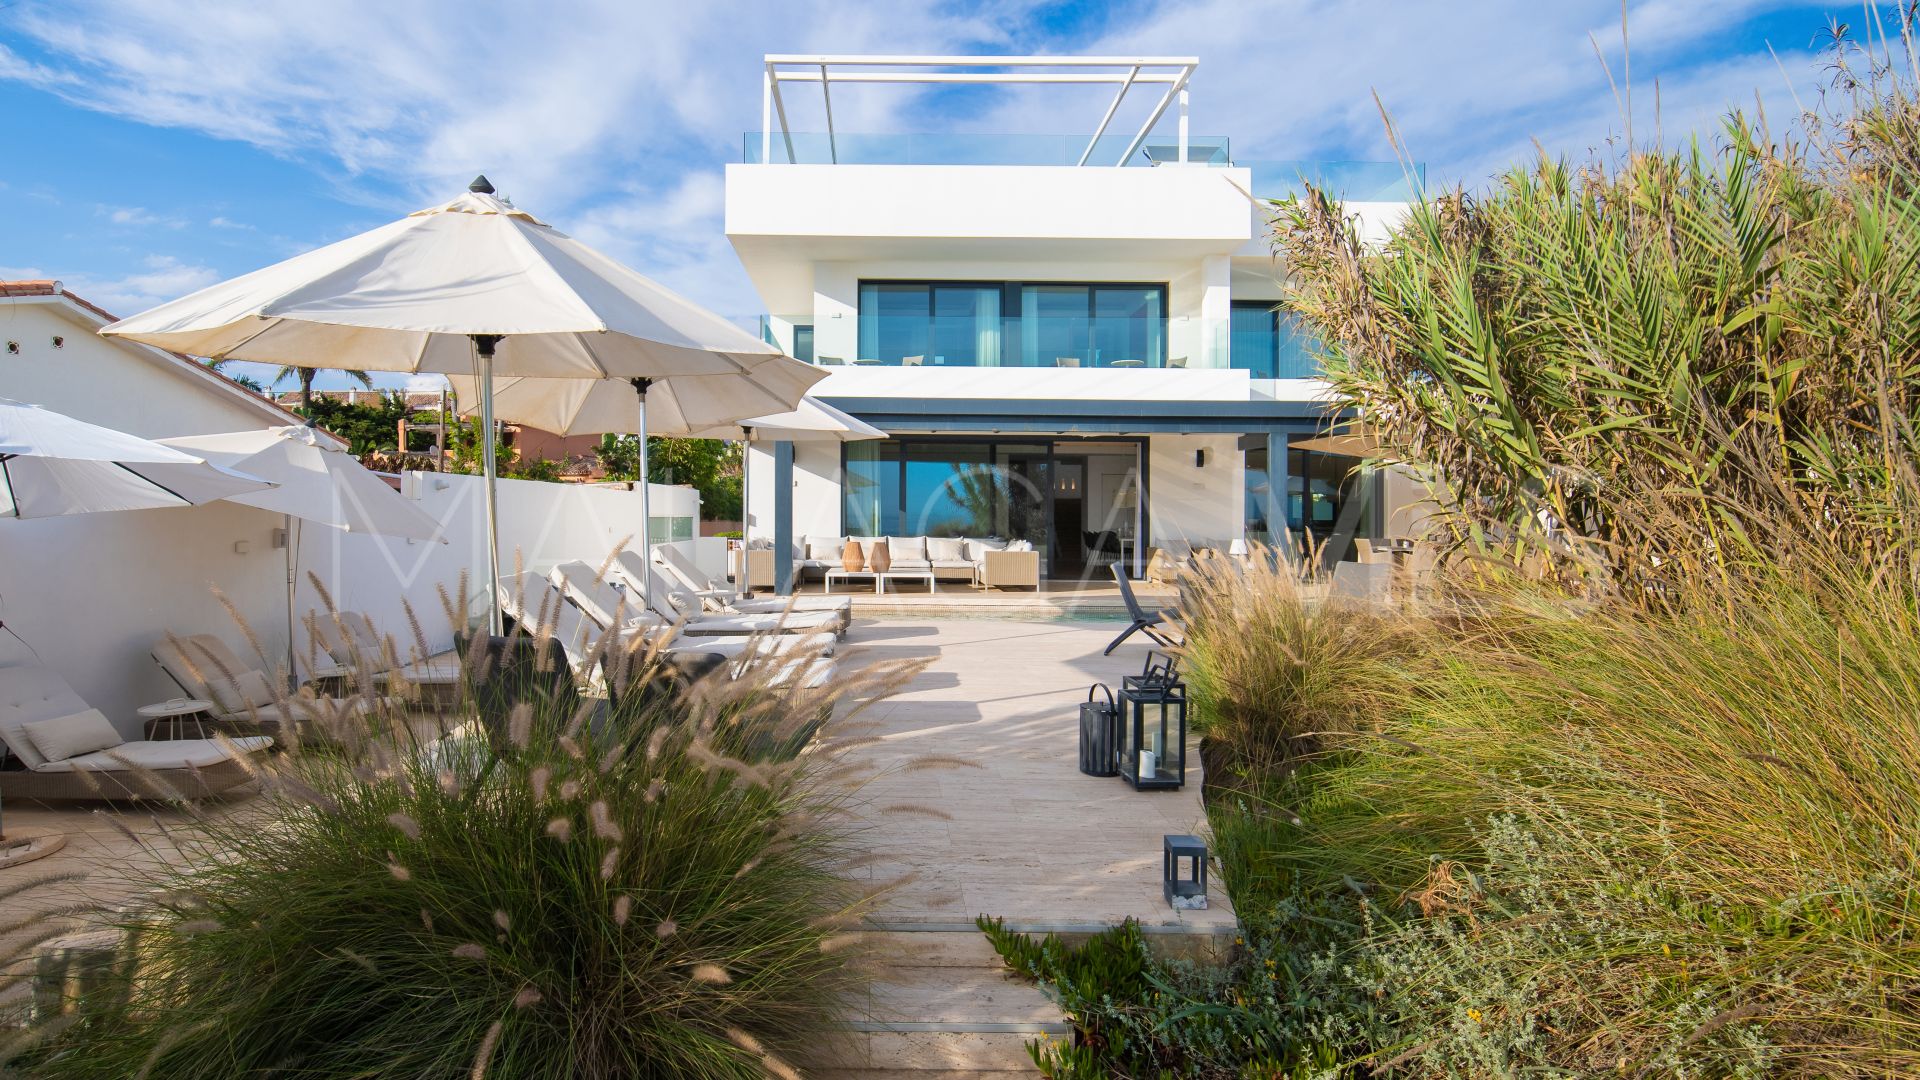 6 bedrooms villa in Costabella for sale